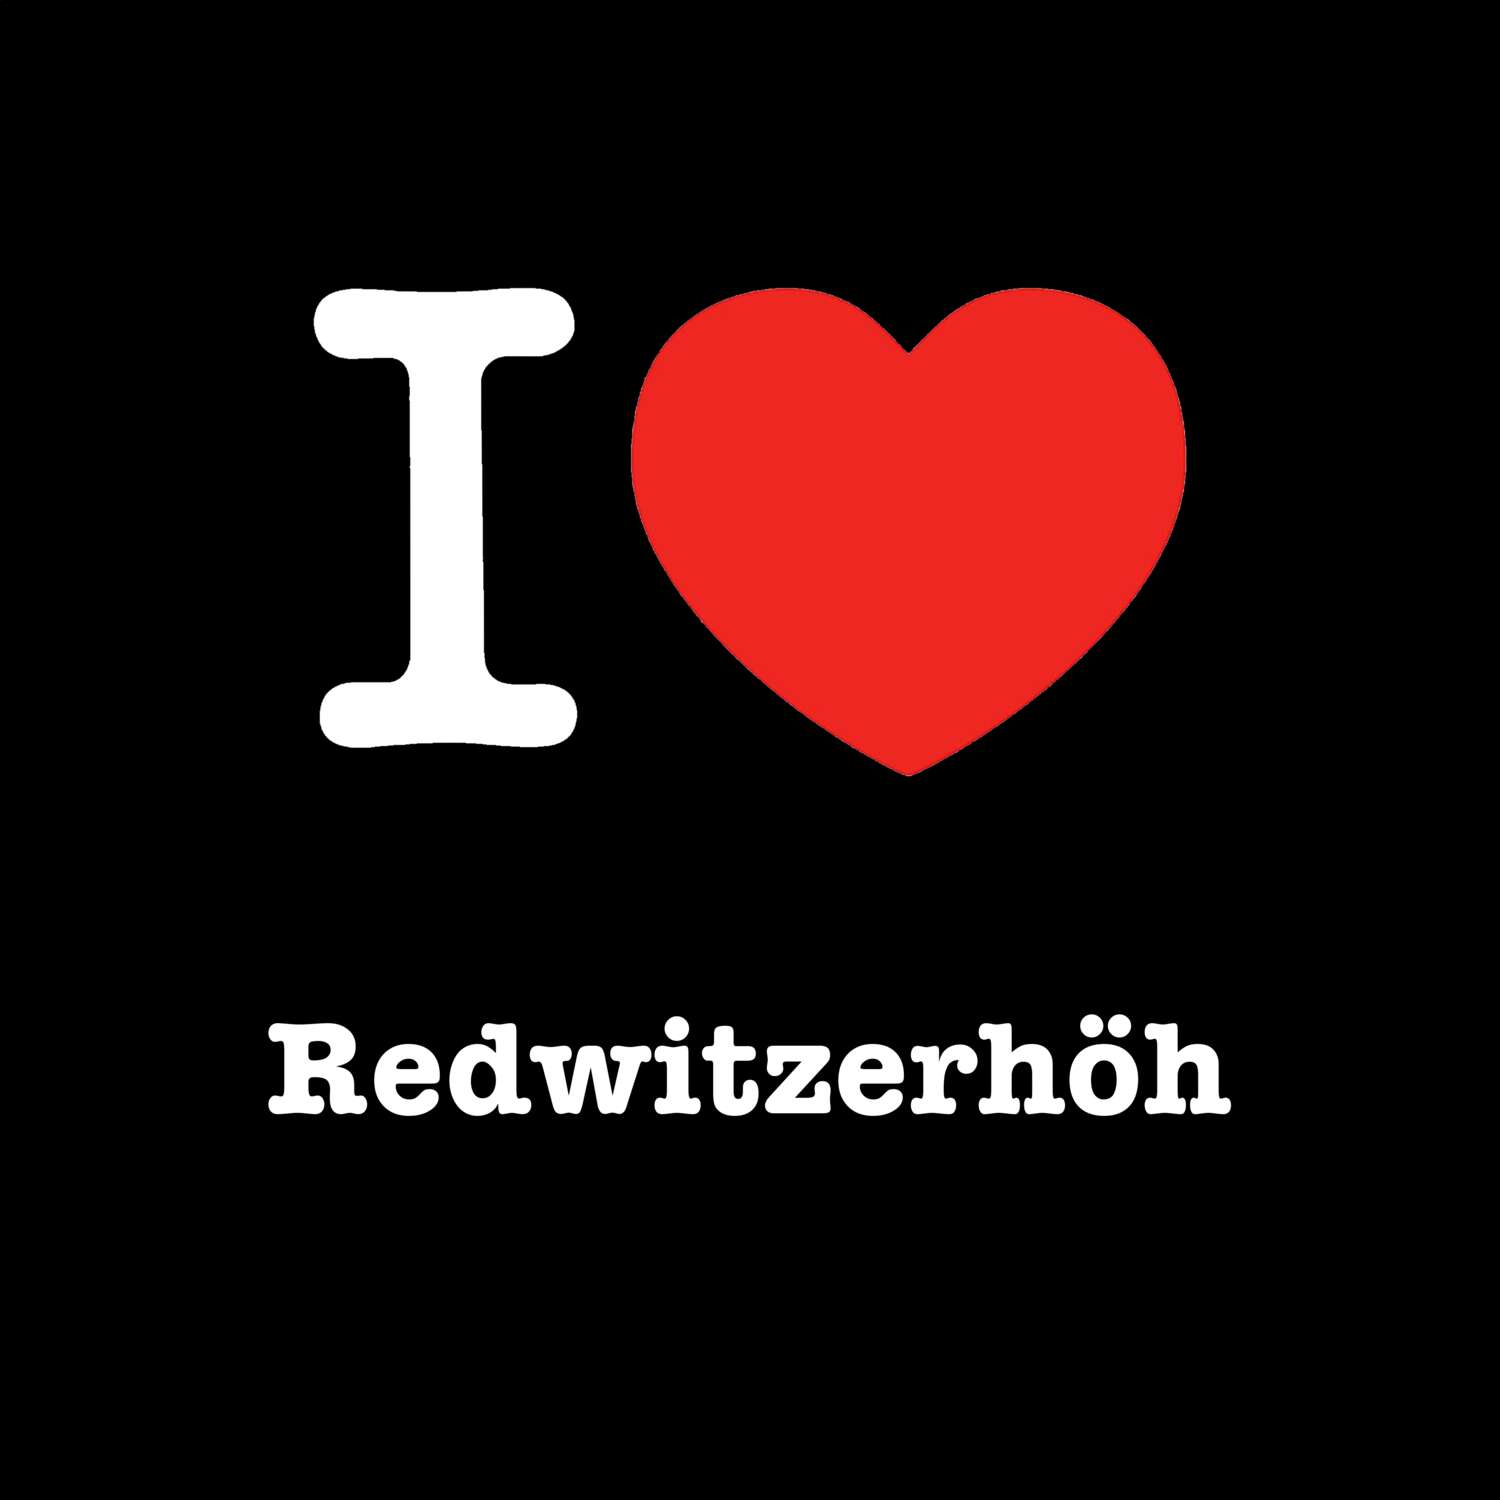 Redwitzerhöh T-Shirt »I love«